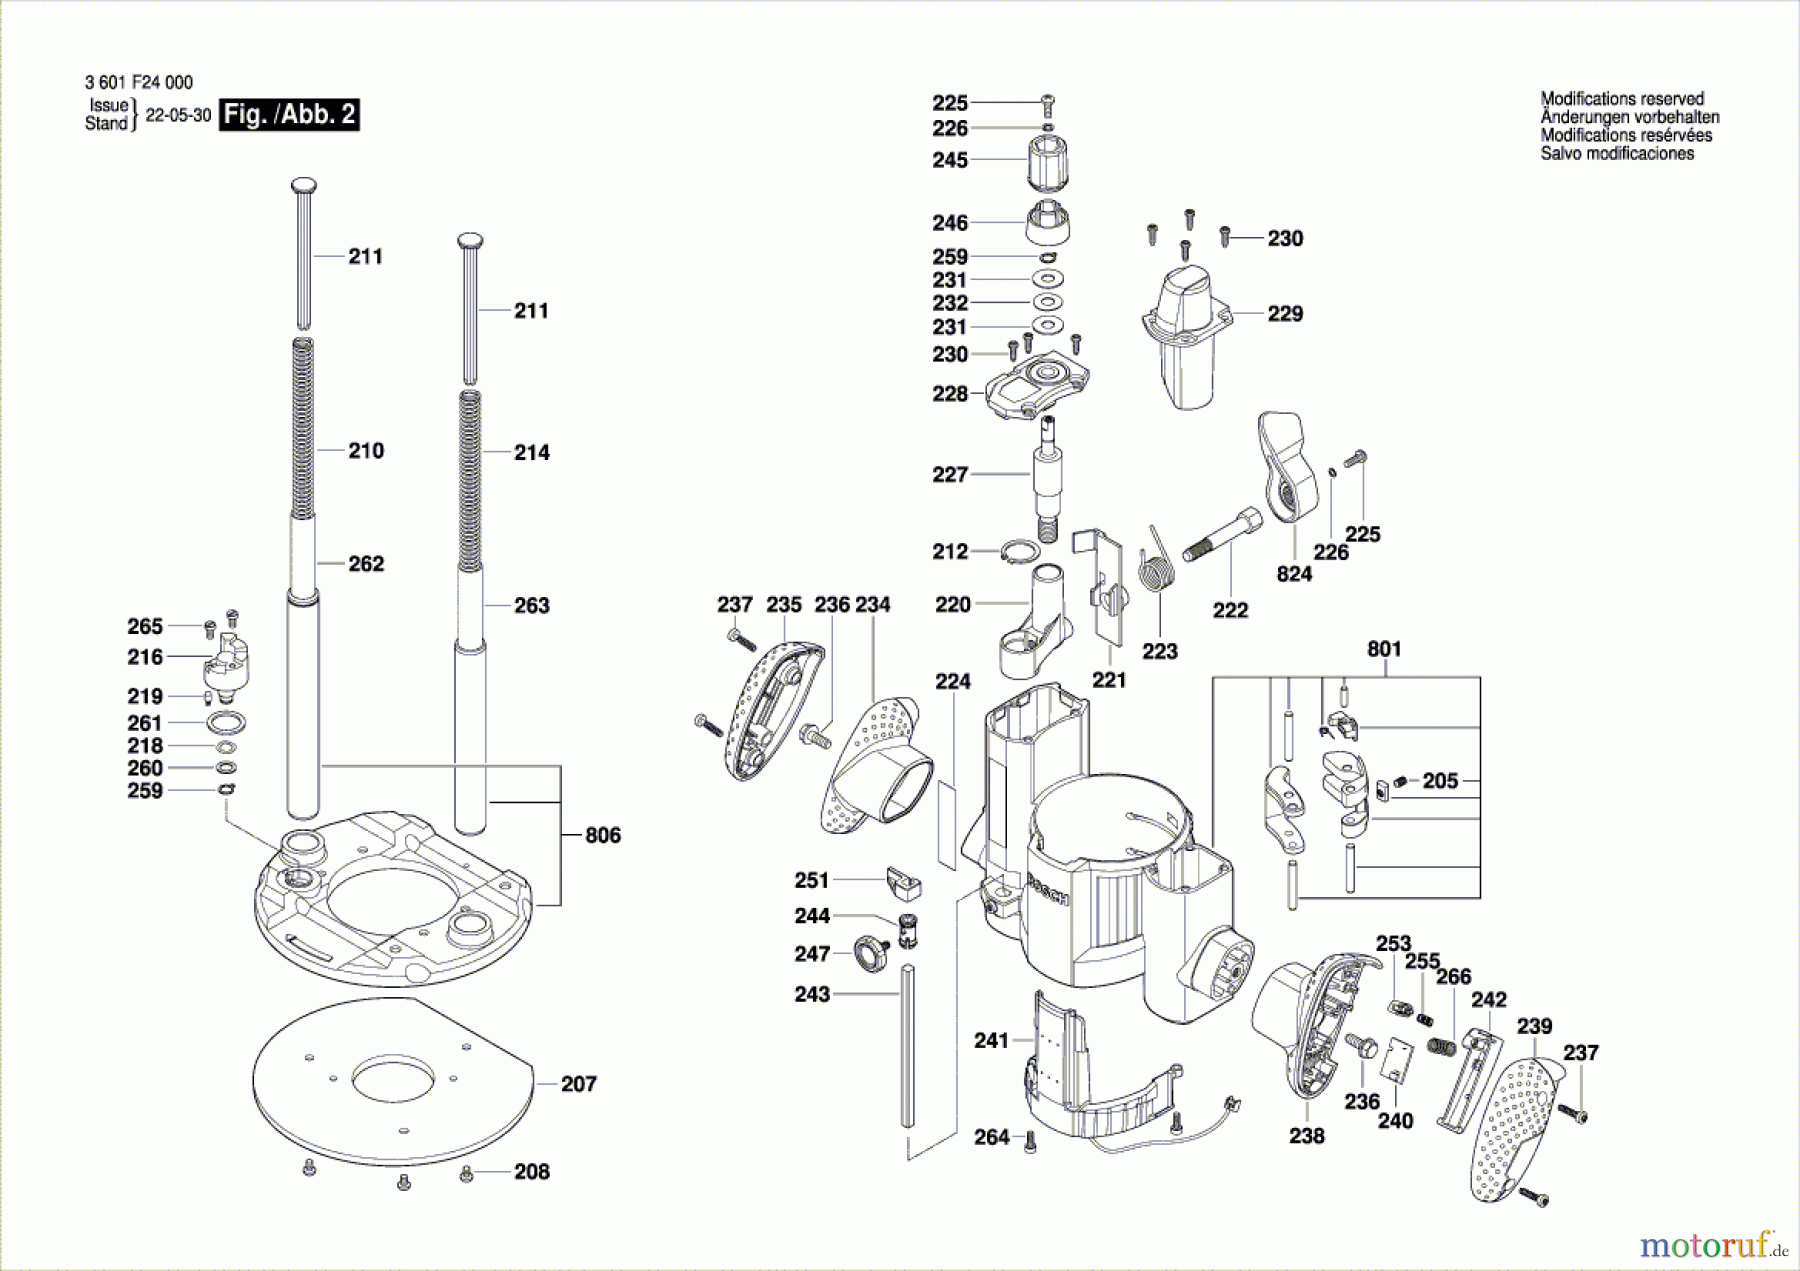  Bosch Werkzeug Oberfräse GOF 1600 CE Seite 2